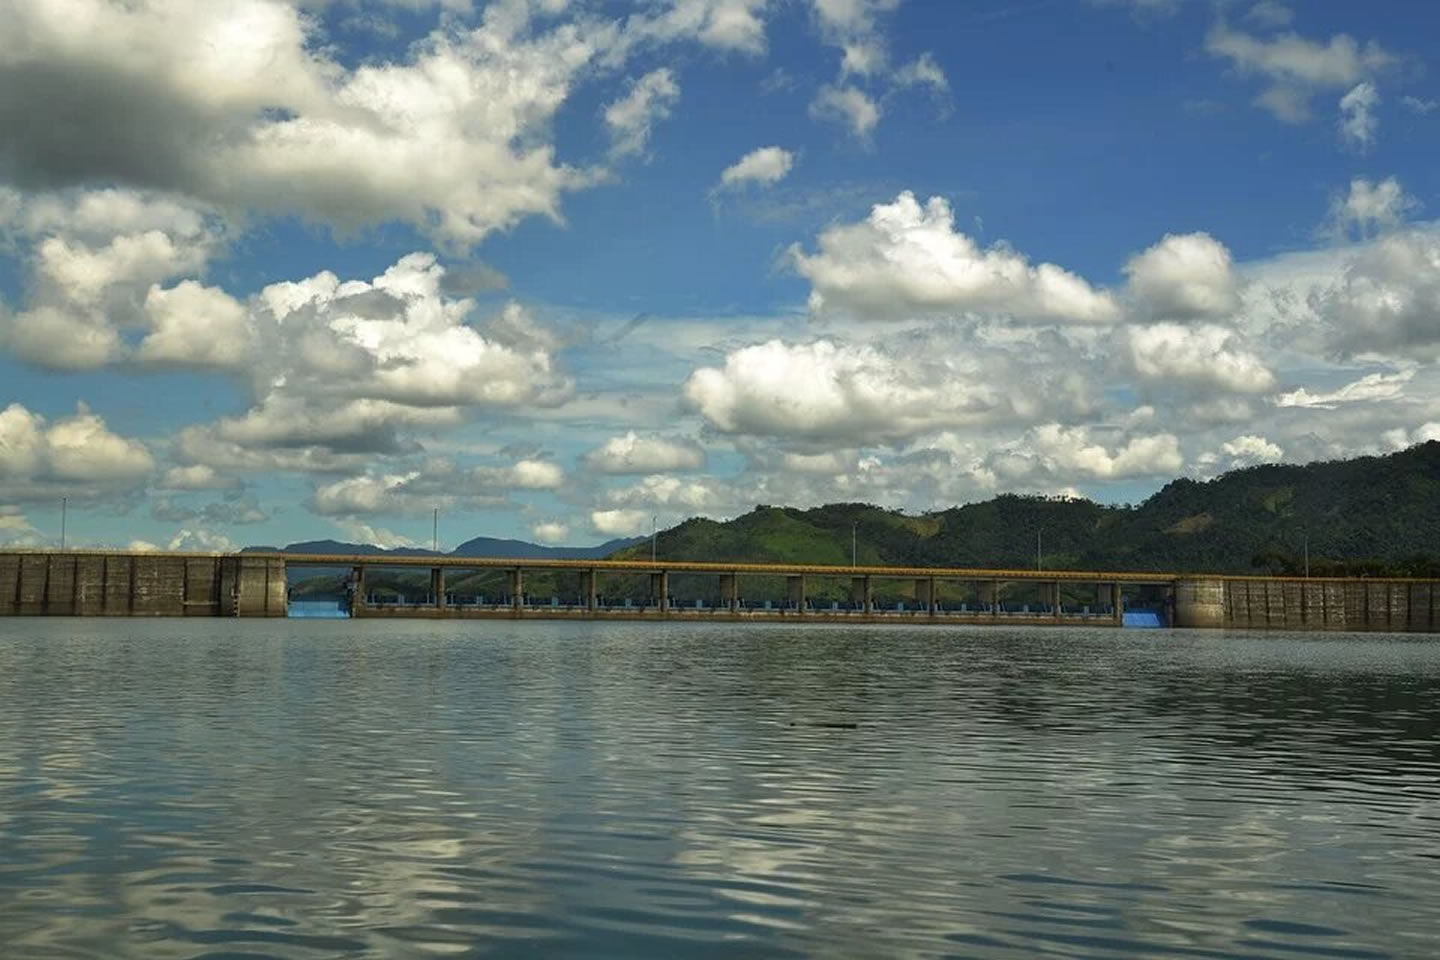 La represa de Urrá, construida en la parte alta del río Sinú, en el departamento de Córdoba, en el Caribe colombiano, ha dejado gran desplazamiento de indígenas y campesinos que vivían en las áreas ahora ocupadas por la hidroeléctrica. Créditos: Agencia de Noticias Universidad Nacional de Colombia